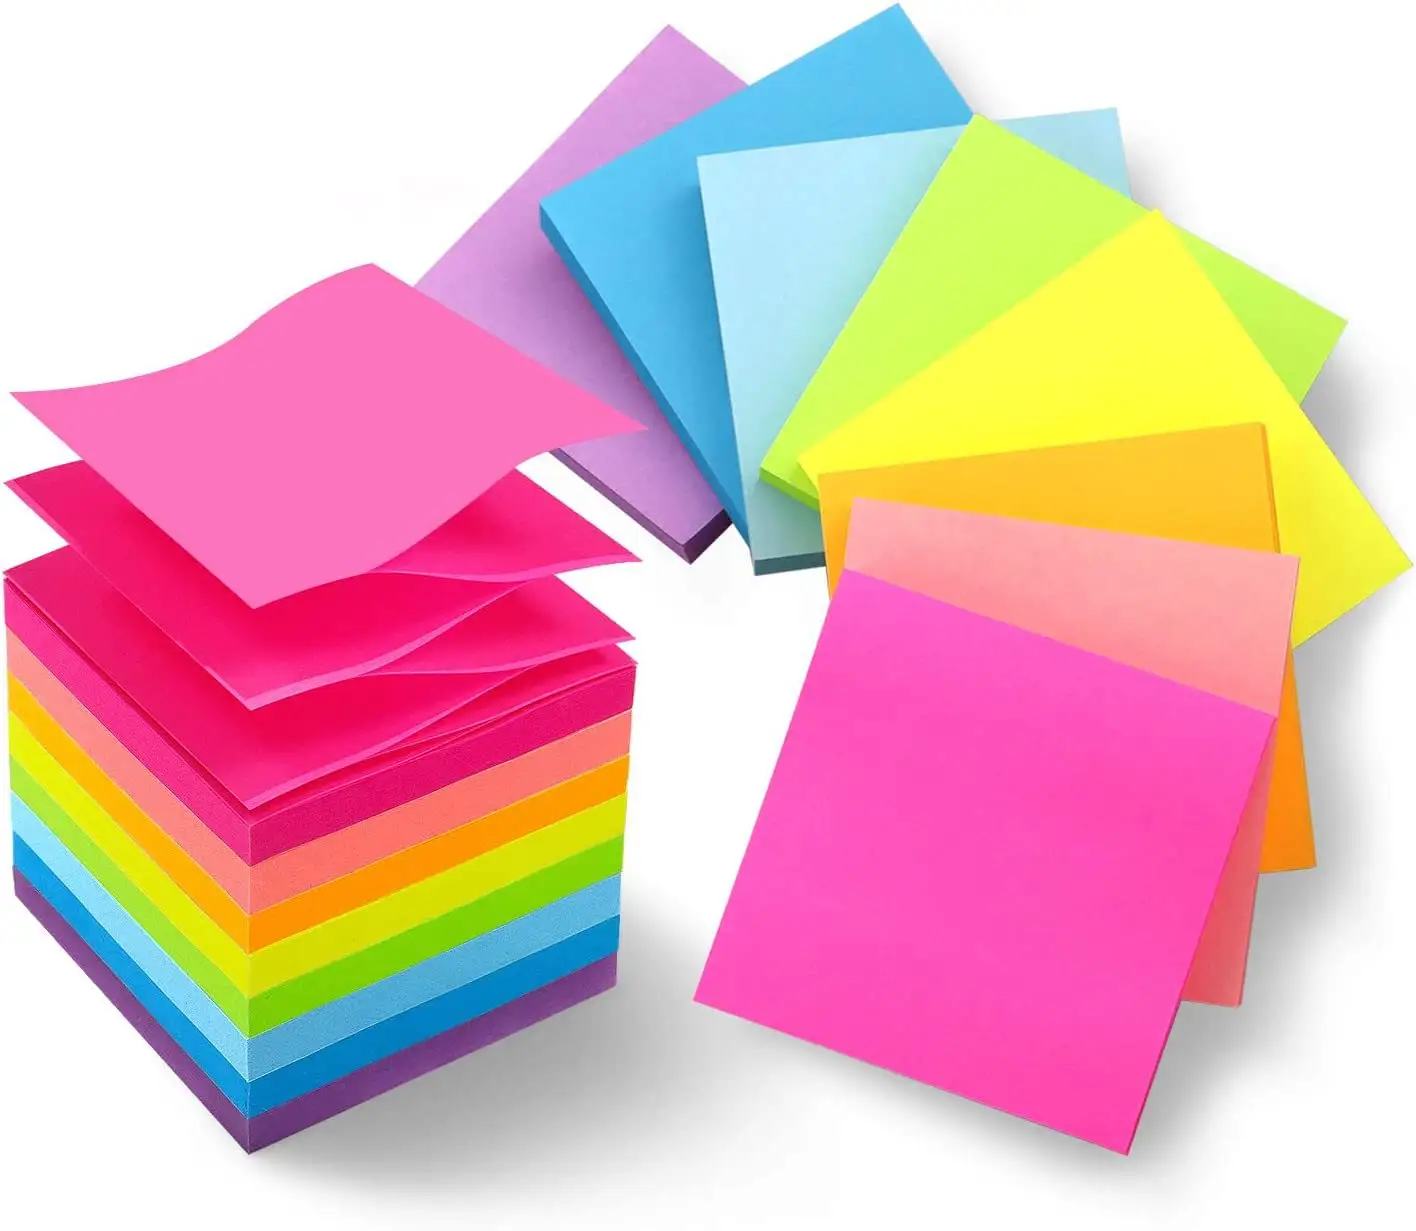 Venta al por mayor de notas súper adhesivas personalizadas, suministros escolares y productos de oficina, de notas adhesivas Bloc, pegatinas de papel 3x3